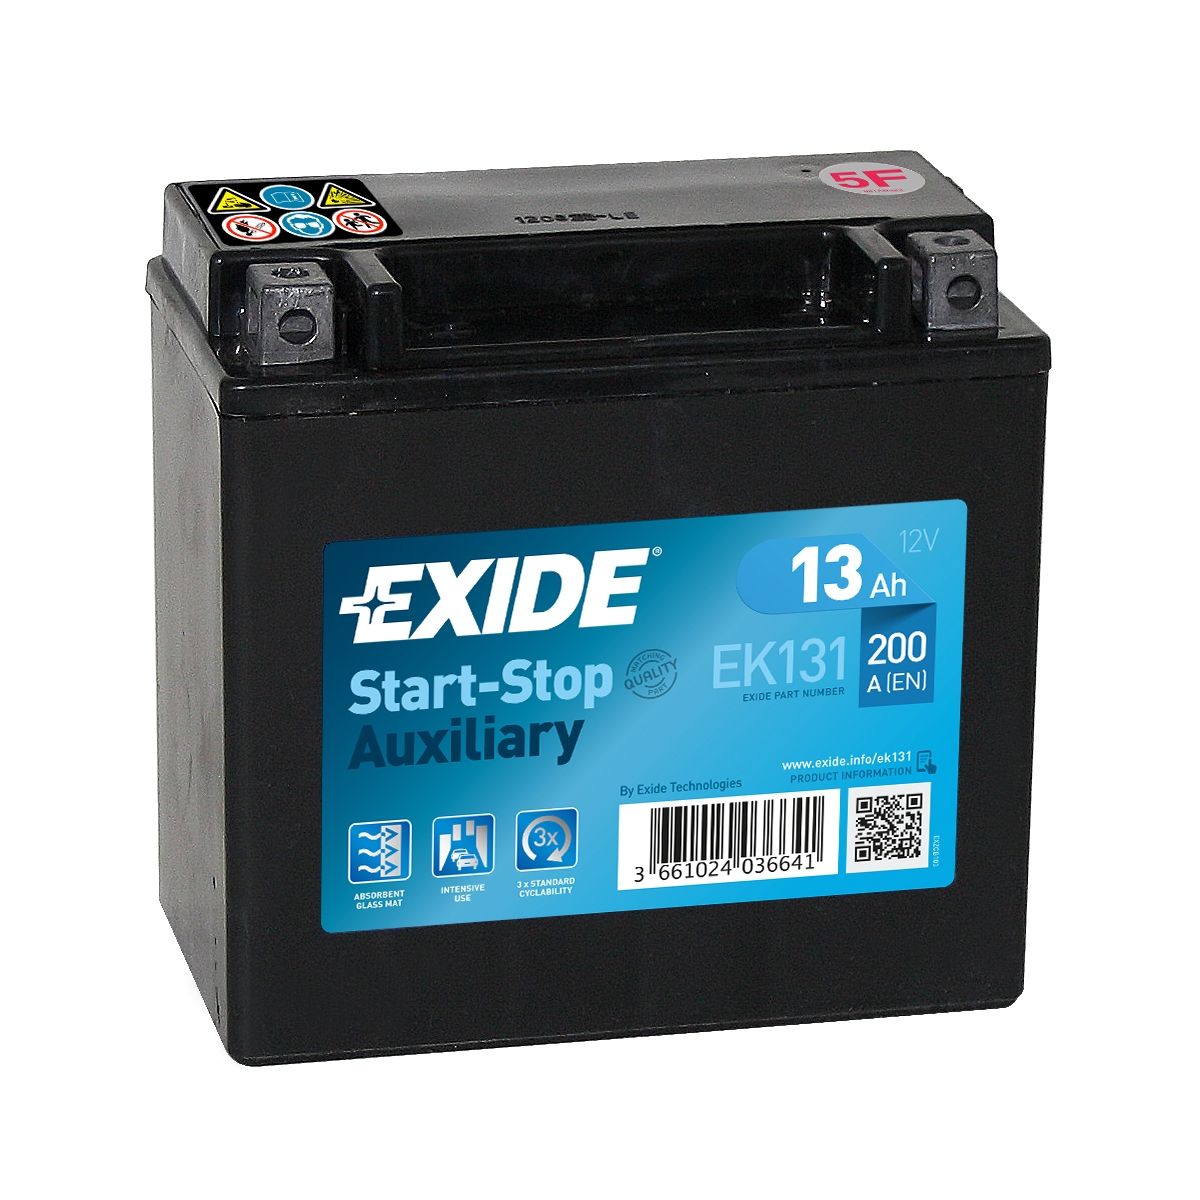 Аккумулятор EXIDE автомобильный AUXILIARY 13Ah 200A (EN) Кислотный EXIDE EK131